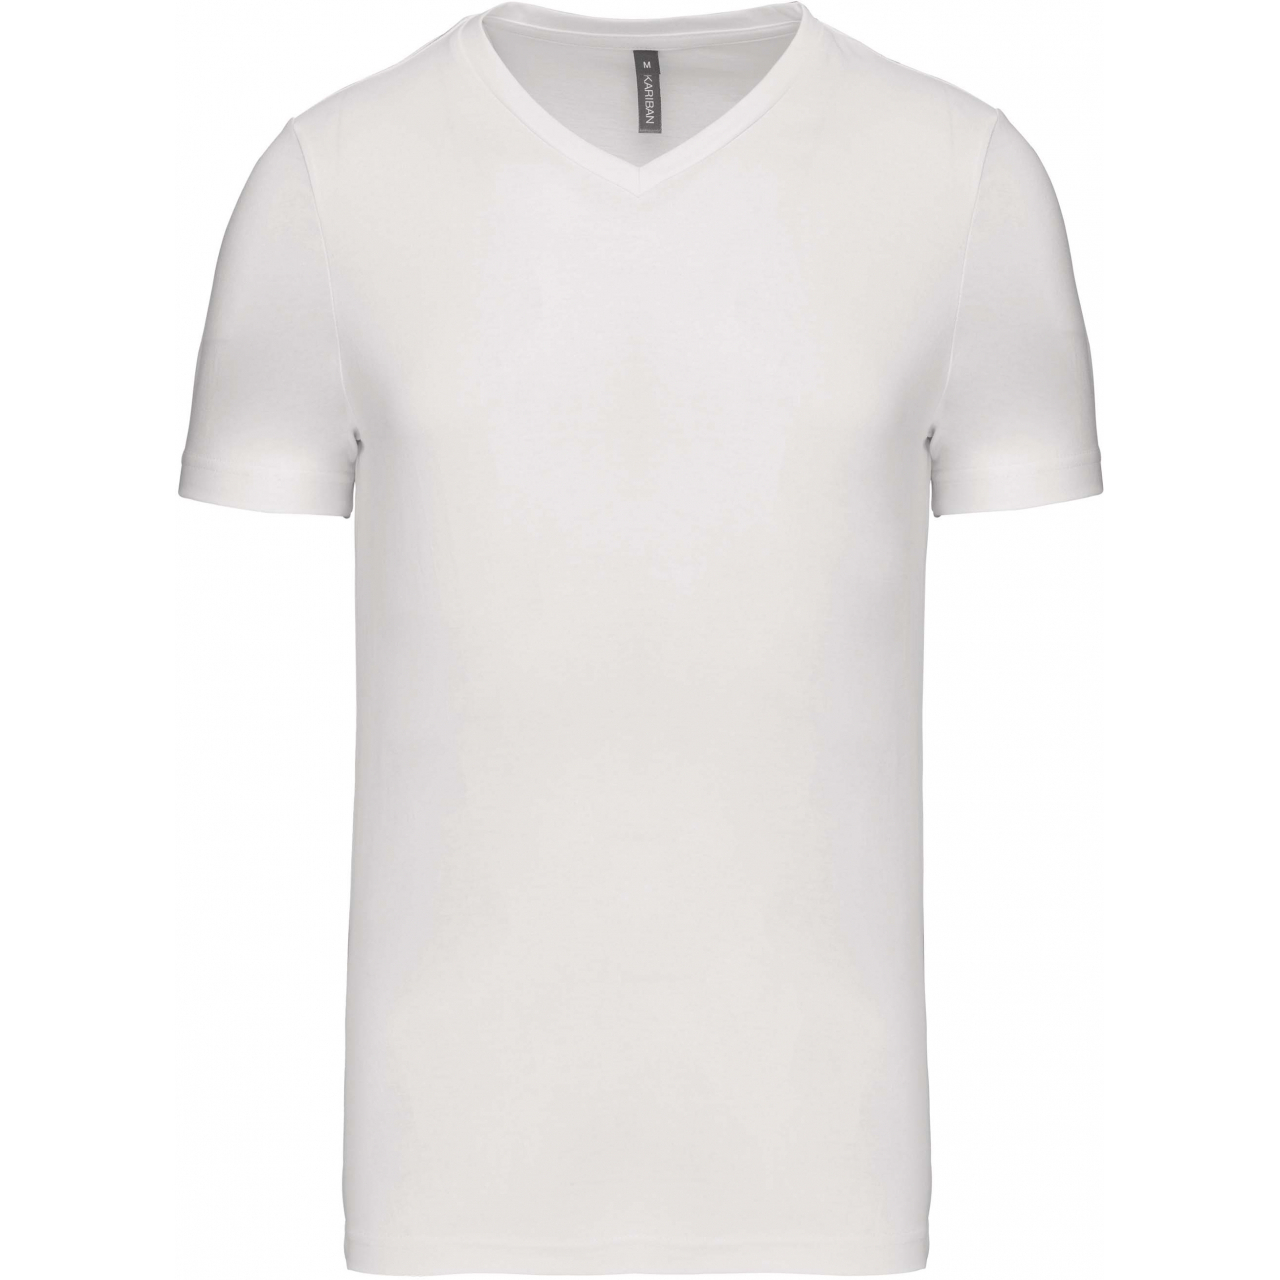 Pánské tričko Kariban krátký rukáv V-neck - bílé, XXL